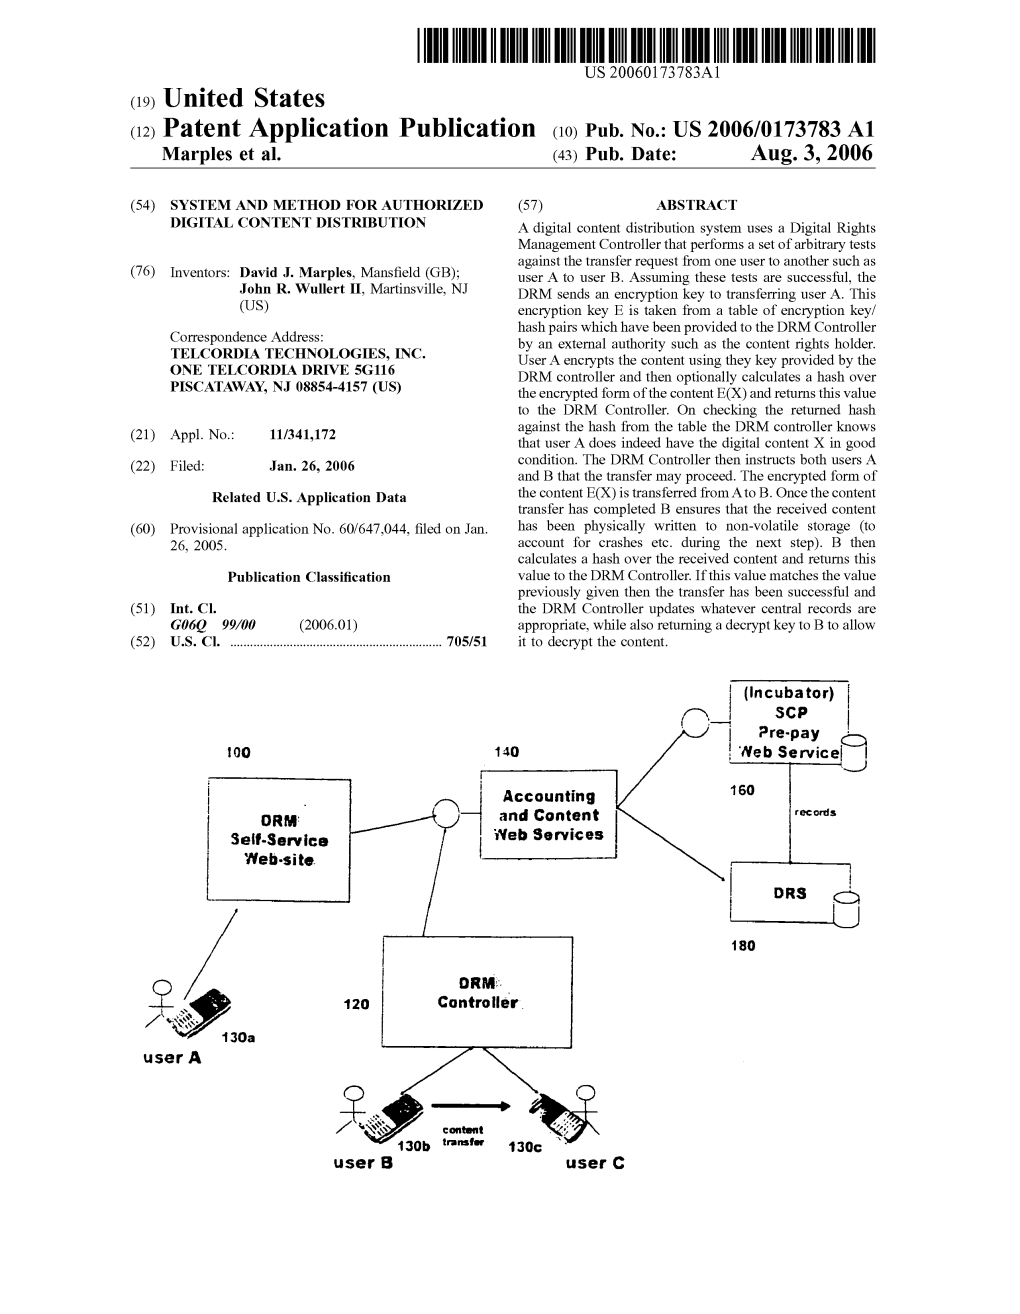 (12) Patent Application Publication (10) Pub. No.: US 2006/0173783 A1 Marples Et Al